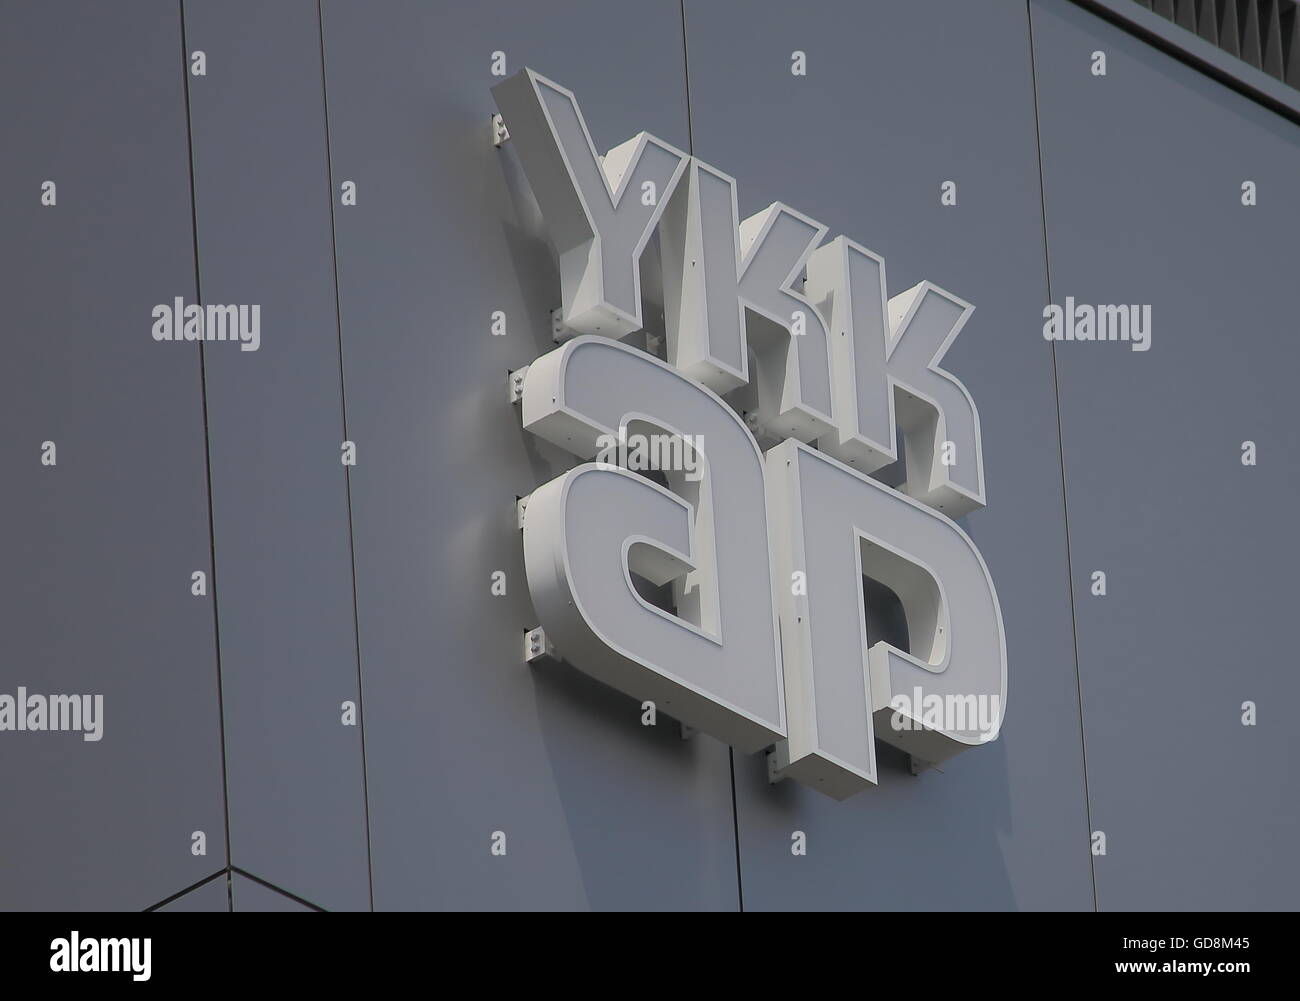 YKK ap. Società giapponese la fabbricazione di prodotti architettonici, una parte del gruppo YKK. Foto Stock